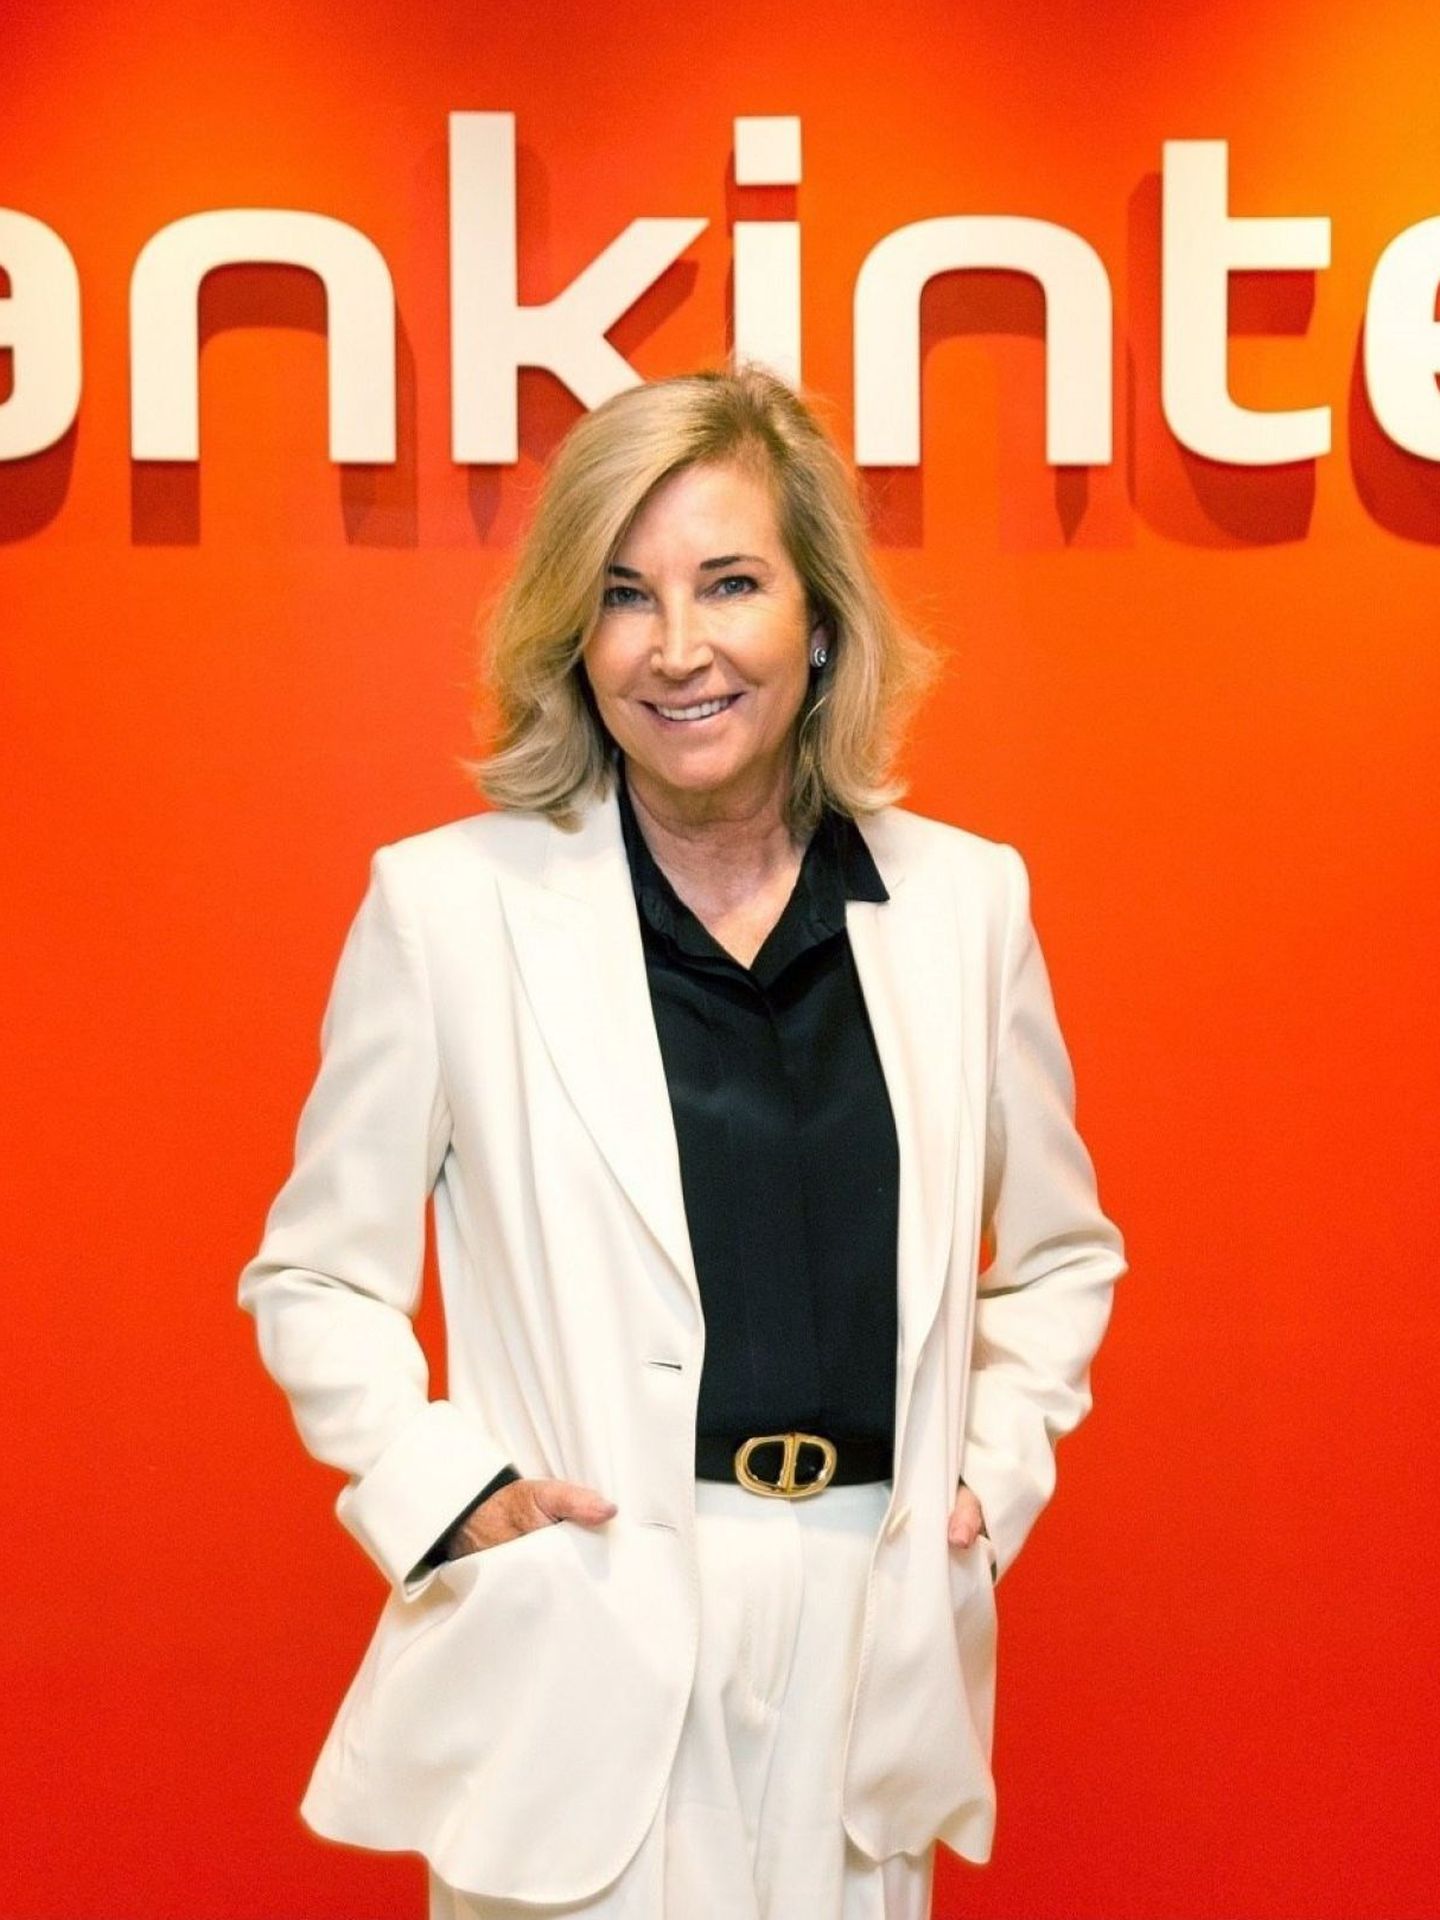 La consejera delegada de Bankinter, María Dolores Dancausa. (EFE/Bankinter)